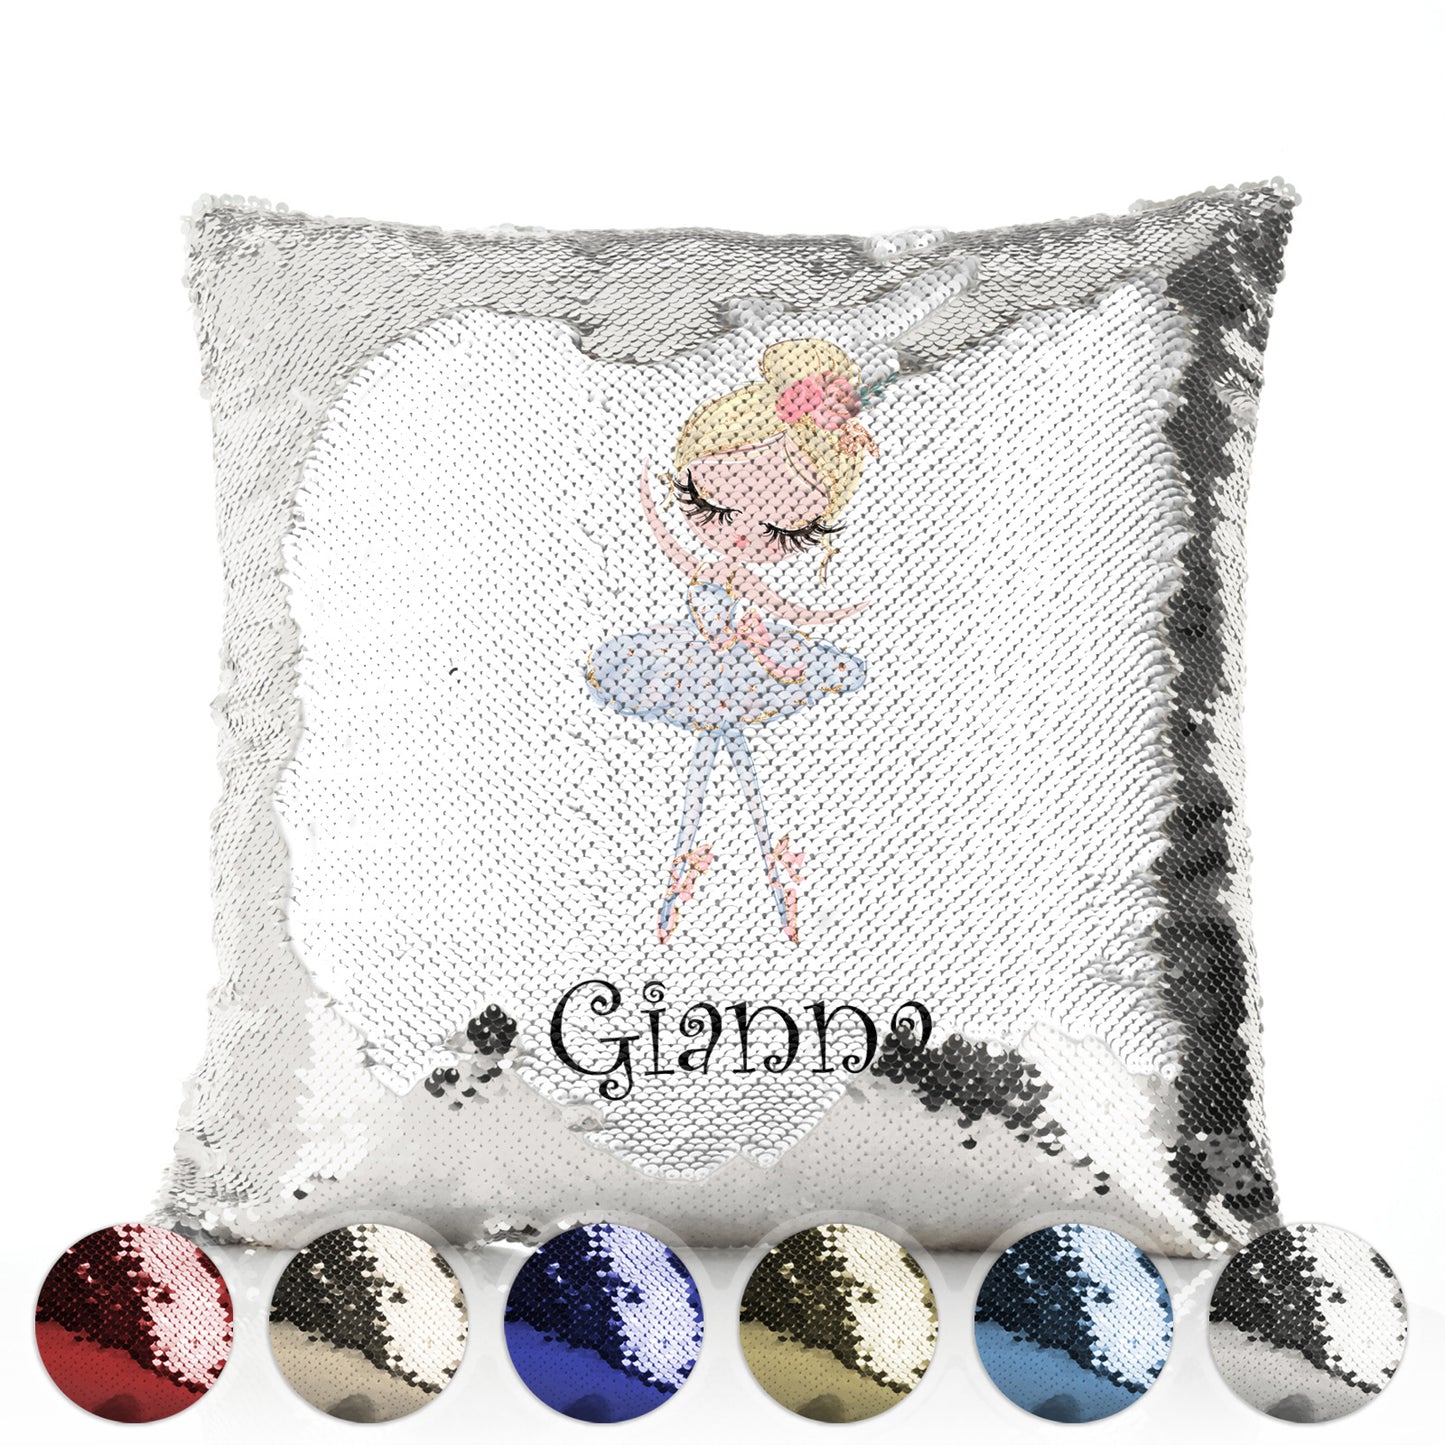 Personalisiertes Paillettenkissen mit süßem Text und blondem Haar, weißem Kleid, Ballerina